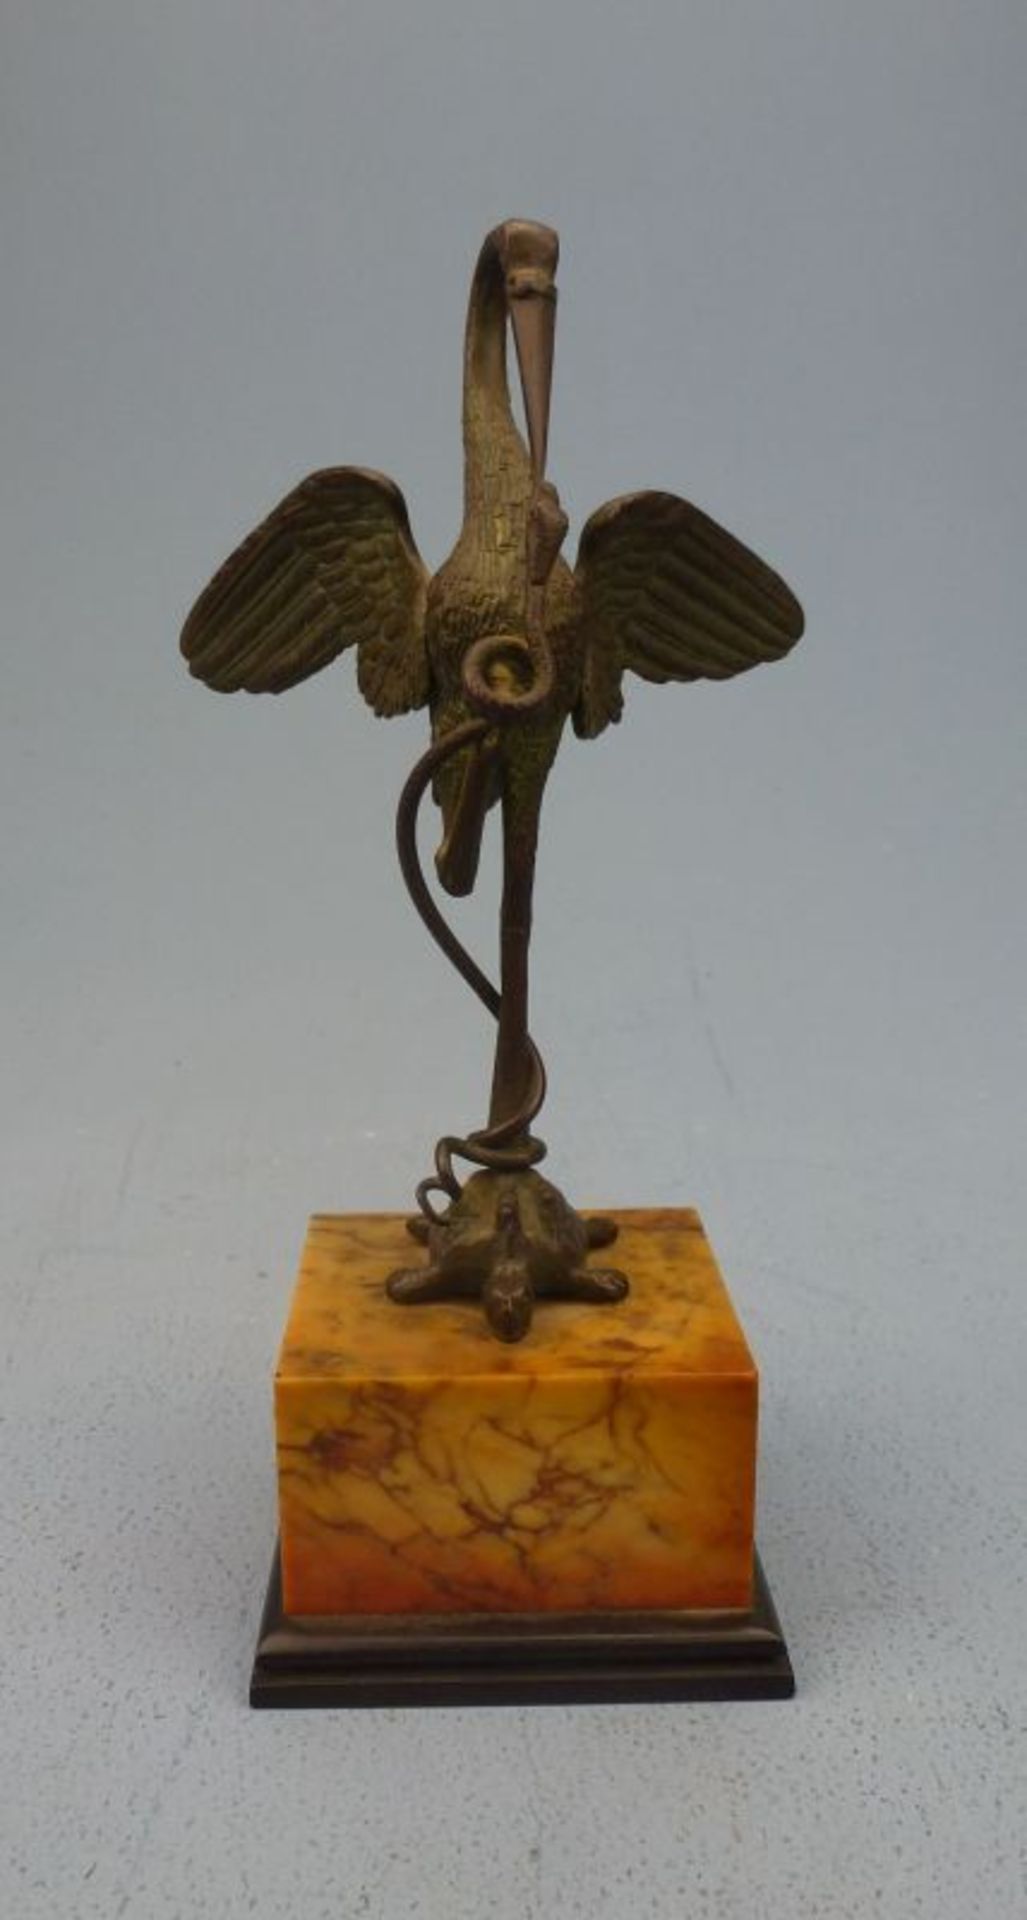 Kranich mit Schlange, Ende 19.Jh.Bronze, patiniert, unsign., auf Schildkröte stehender Kranich m.